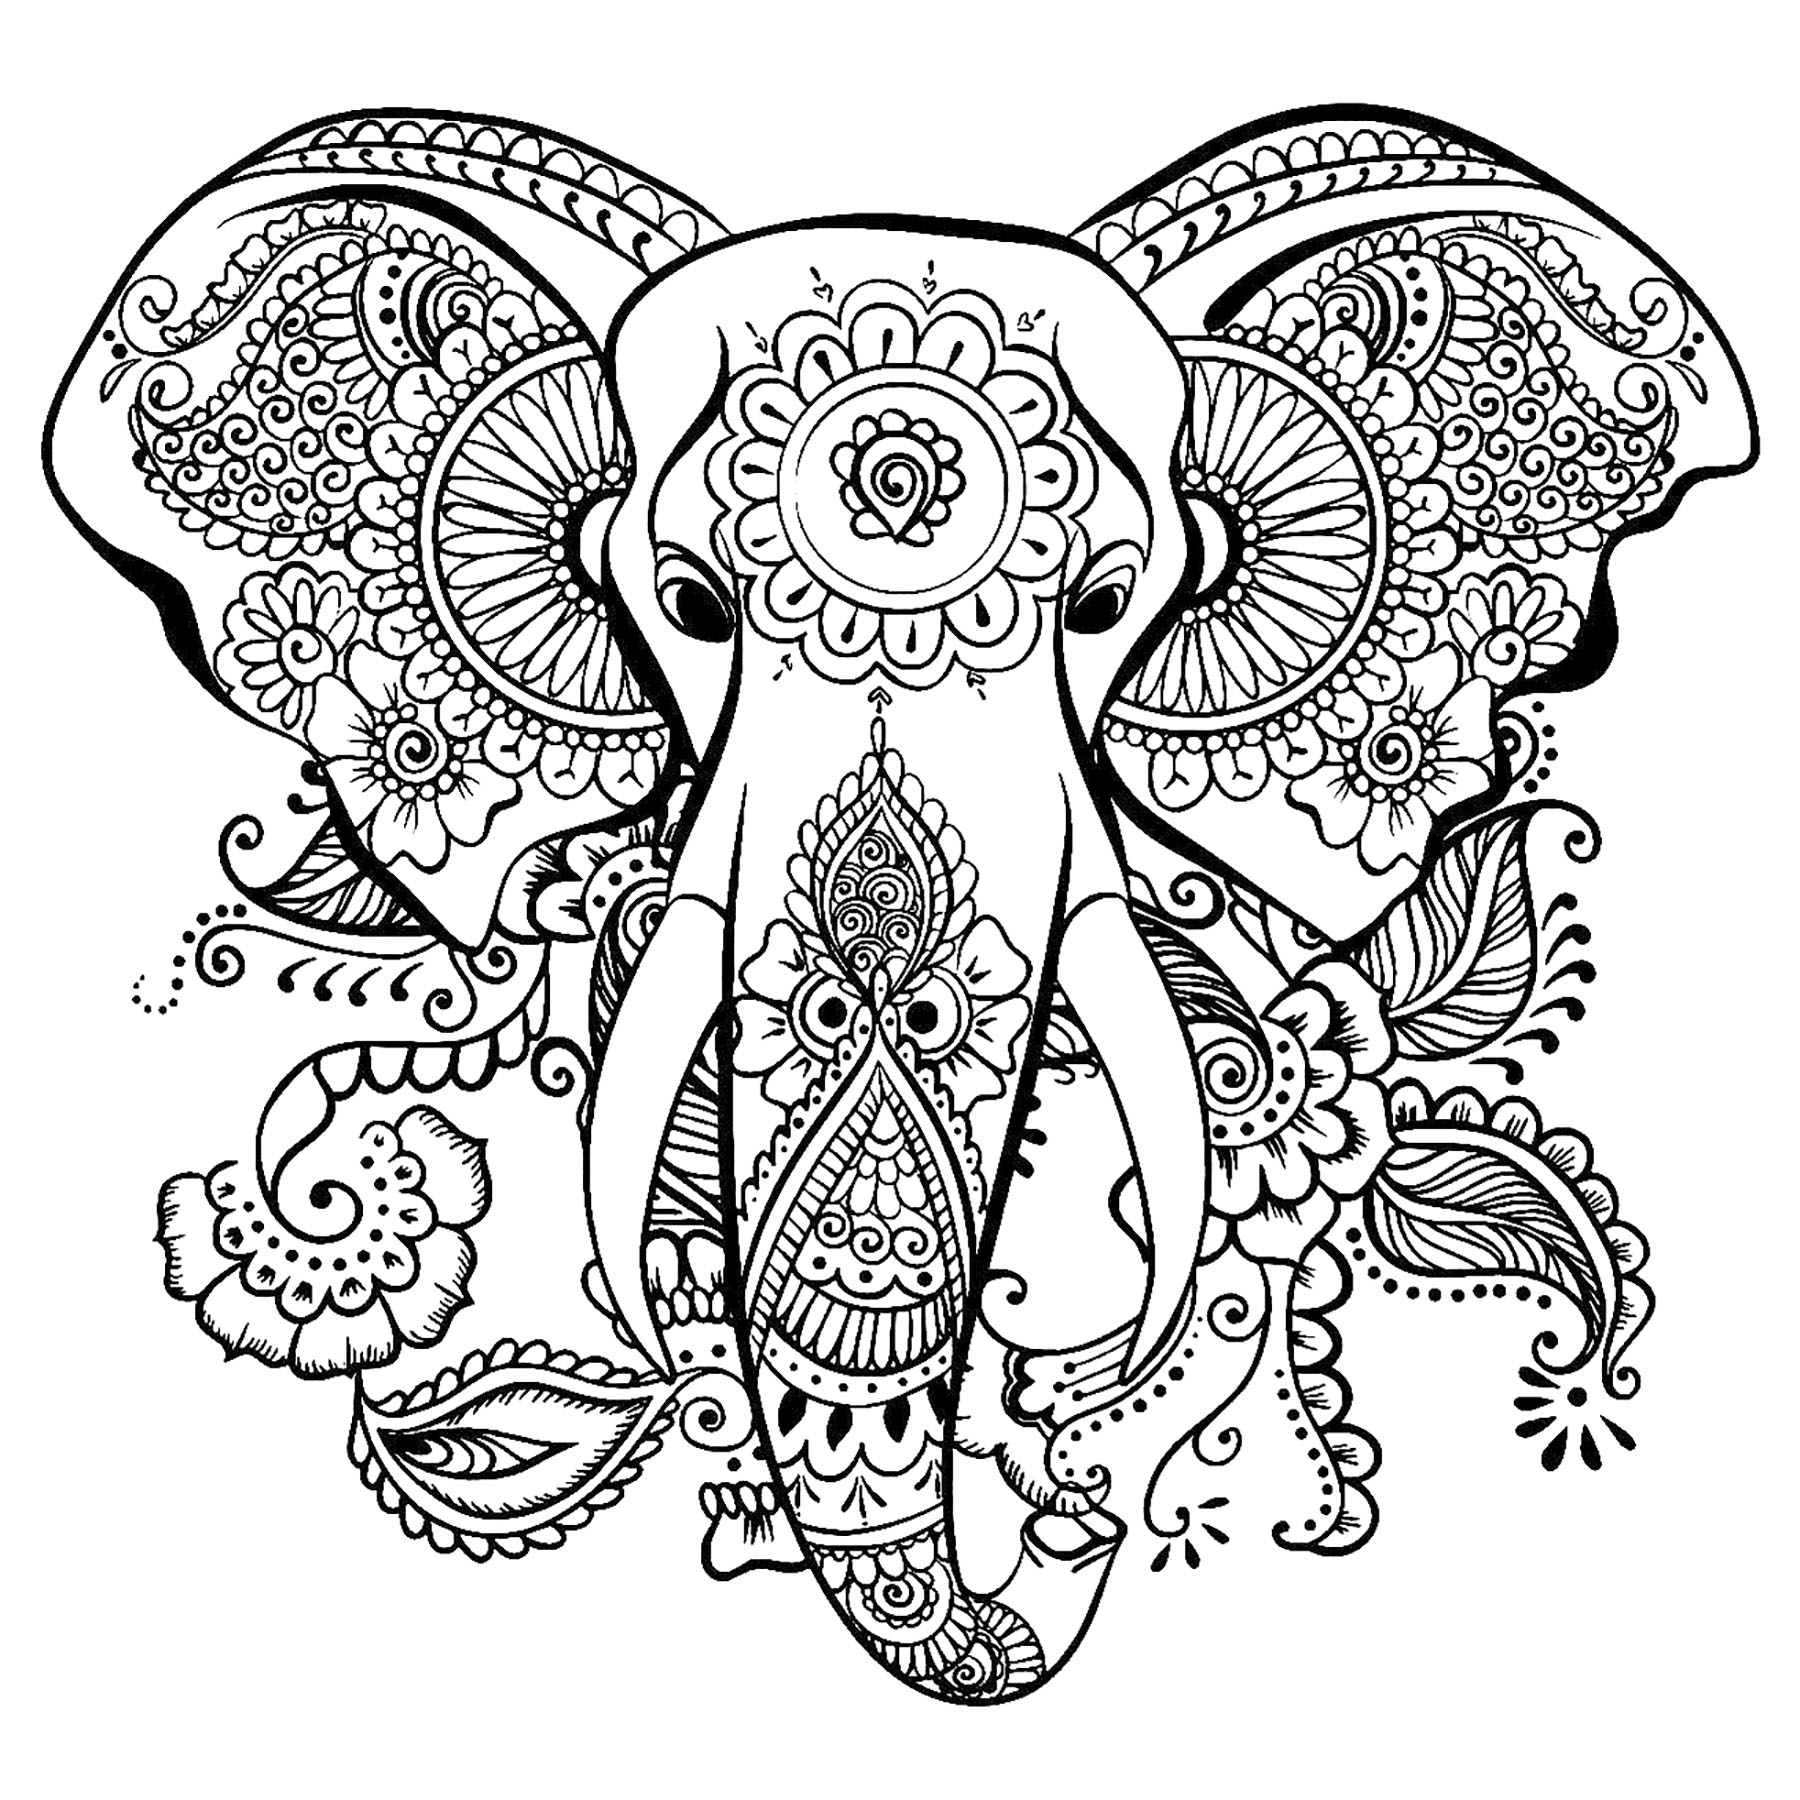 Testa di elefante da colorare, con bellissimi disegni